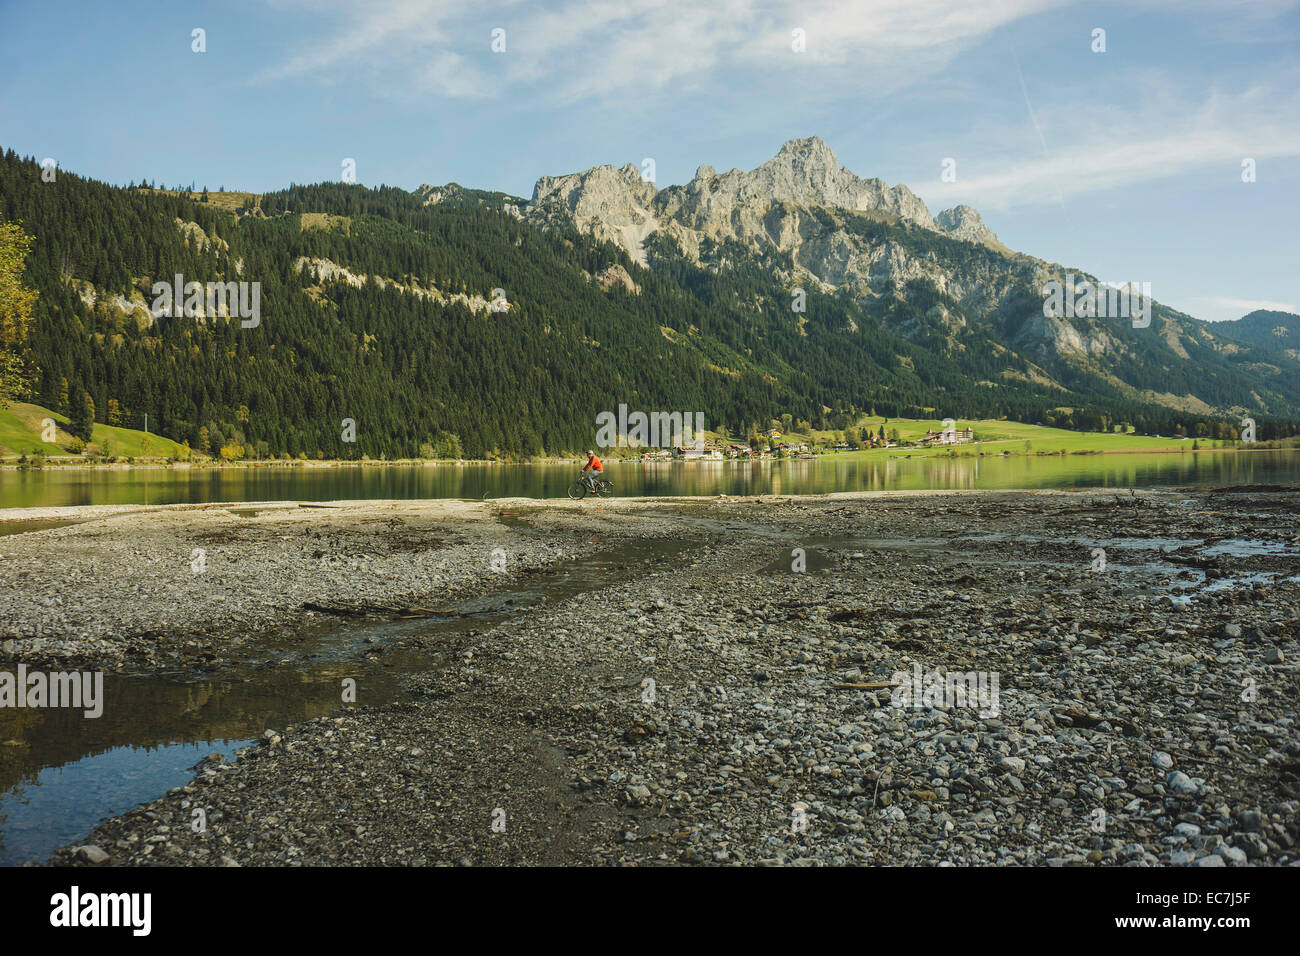 Austria, Tyrol, Tannheimer Tal, mountainscape with lake Stock Photo